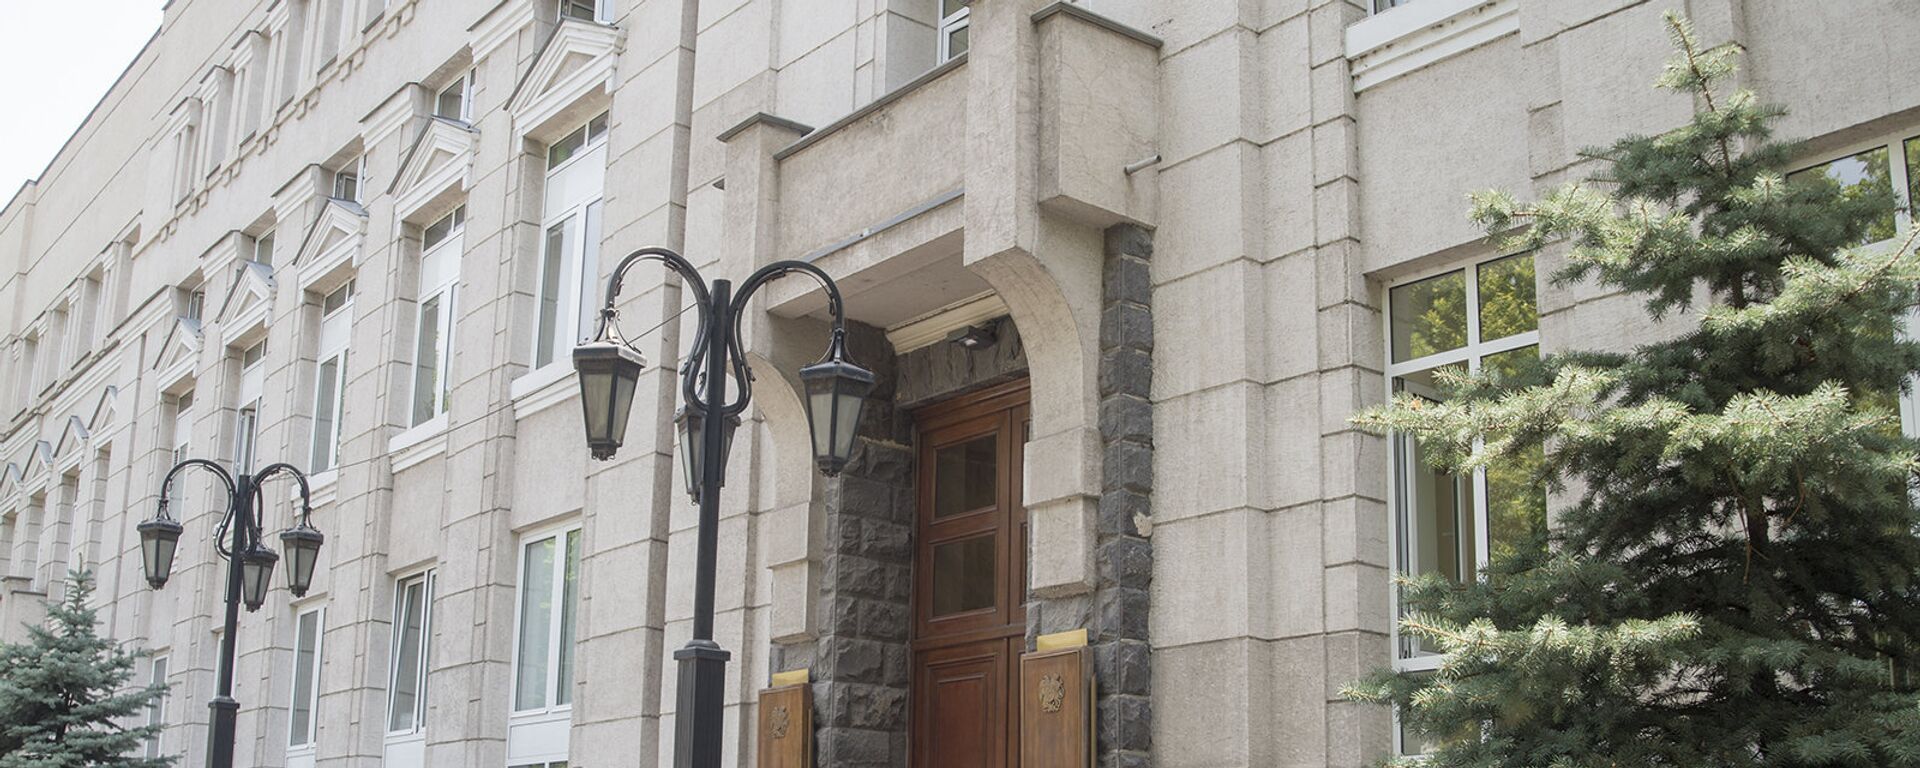 Здание Центрального банка Армении  - Sputnik Արմենիա, 1920, 23.08.2019